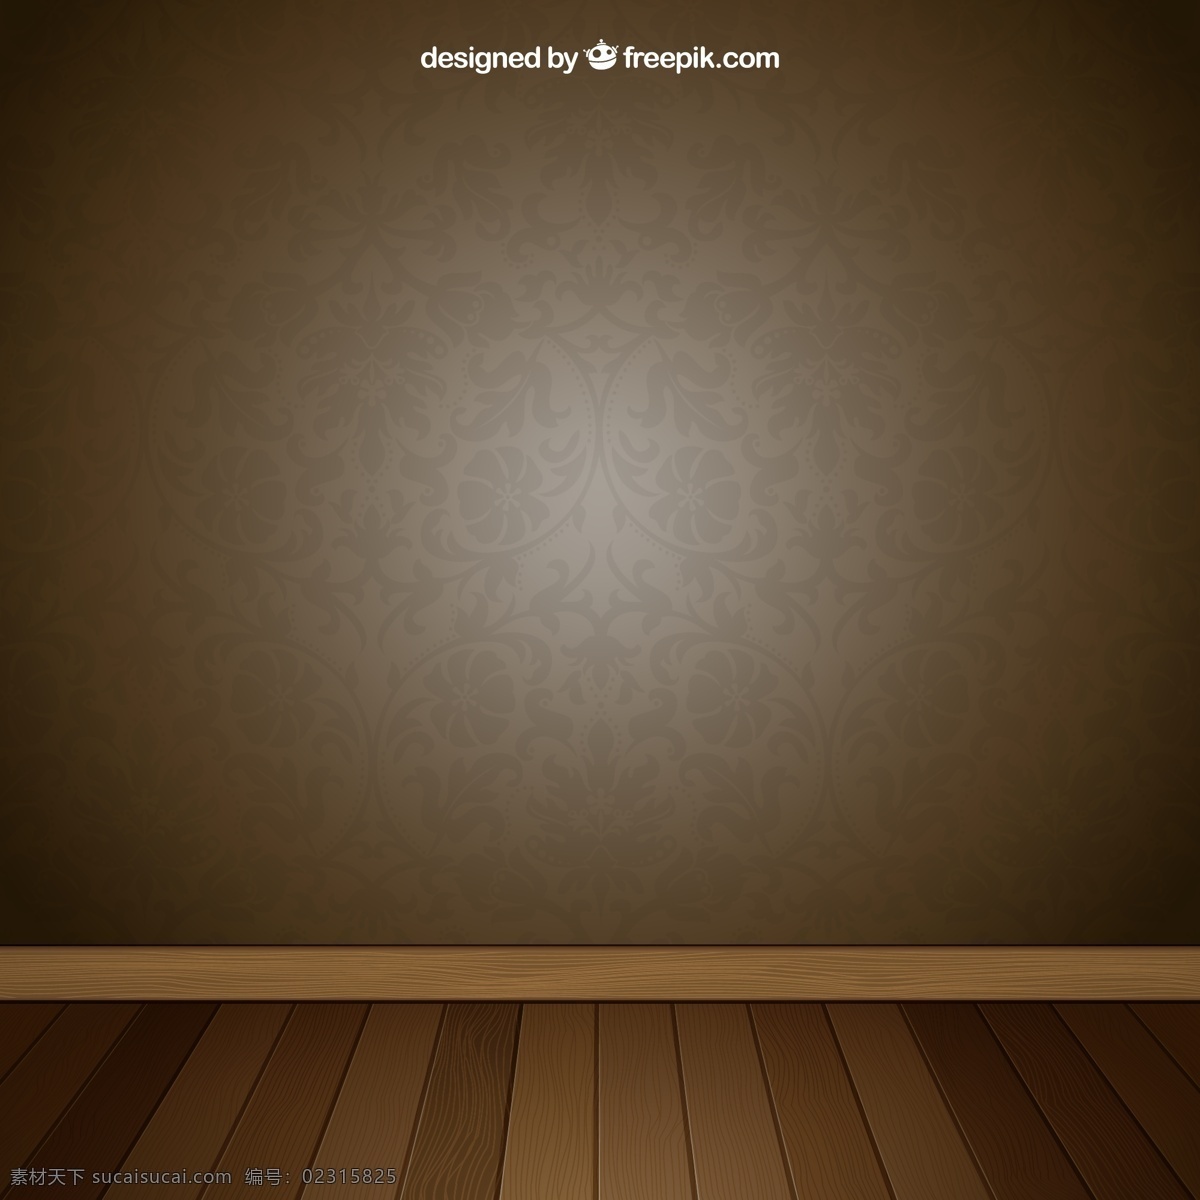 空白墙面地板 室内装饰 复古 咖啡色壁纸 地板 花纹 壁纸 木地板 墙壁 矢量图